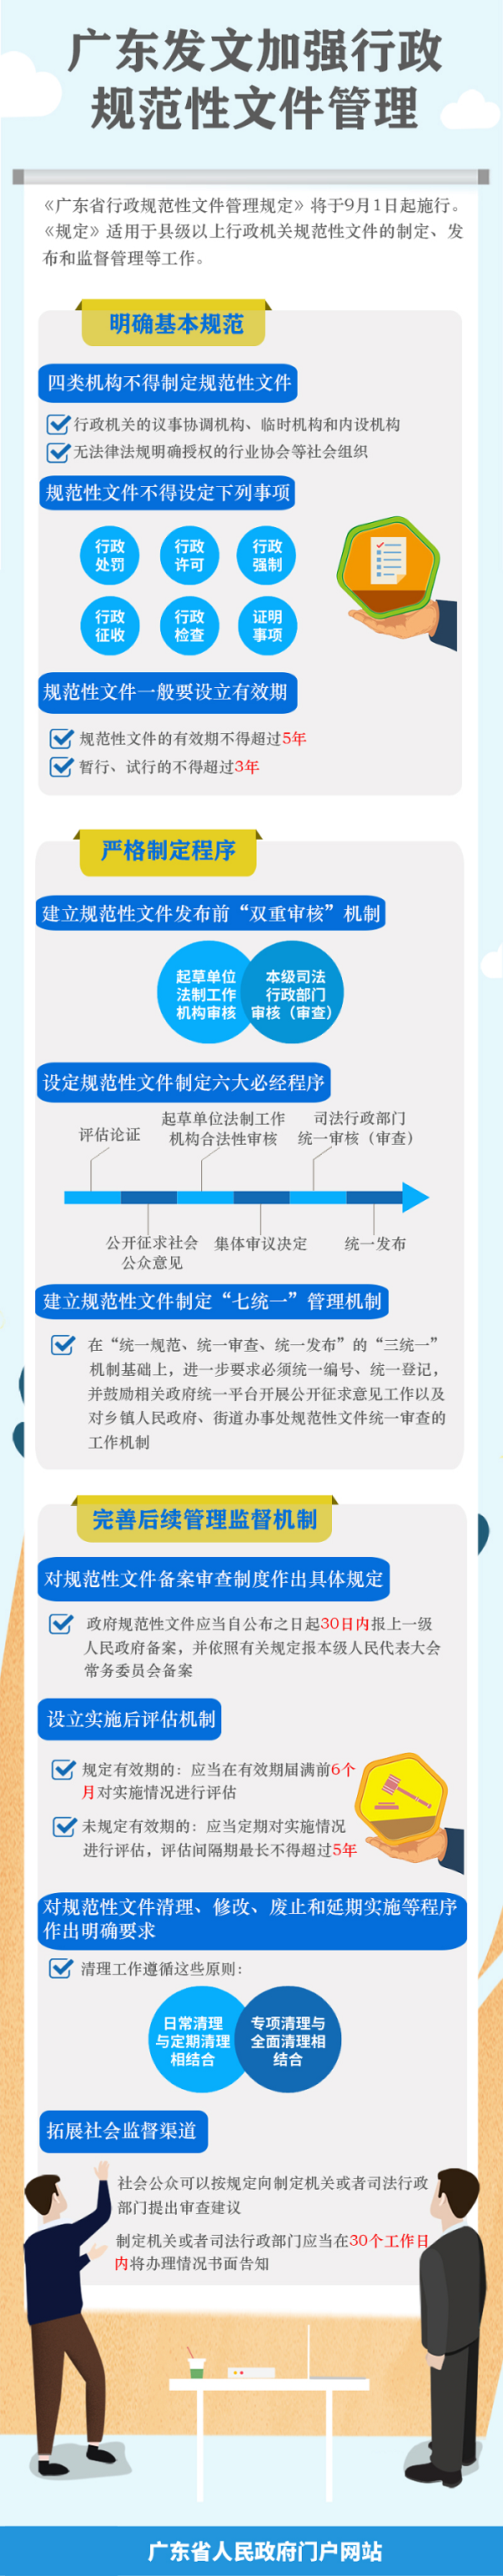 《广东省行政规范性文件管理规定》图文解读.png